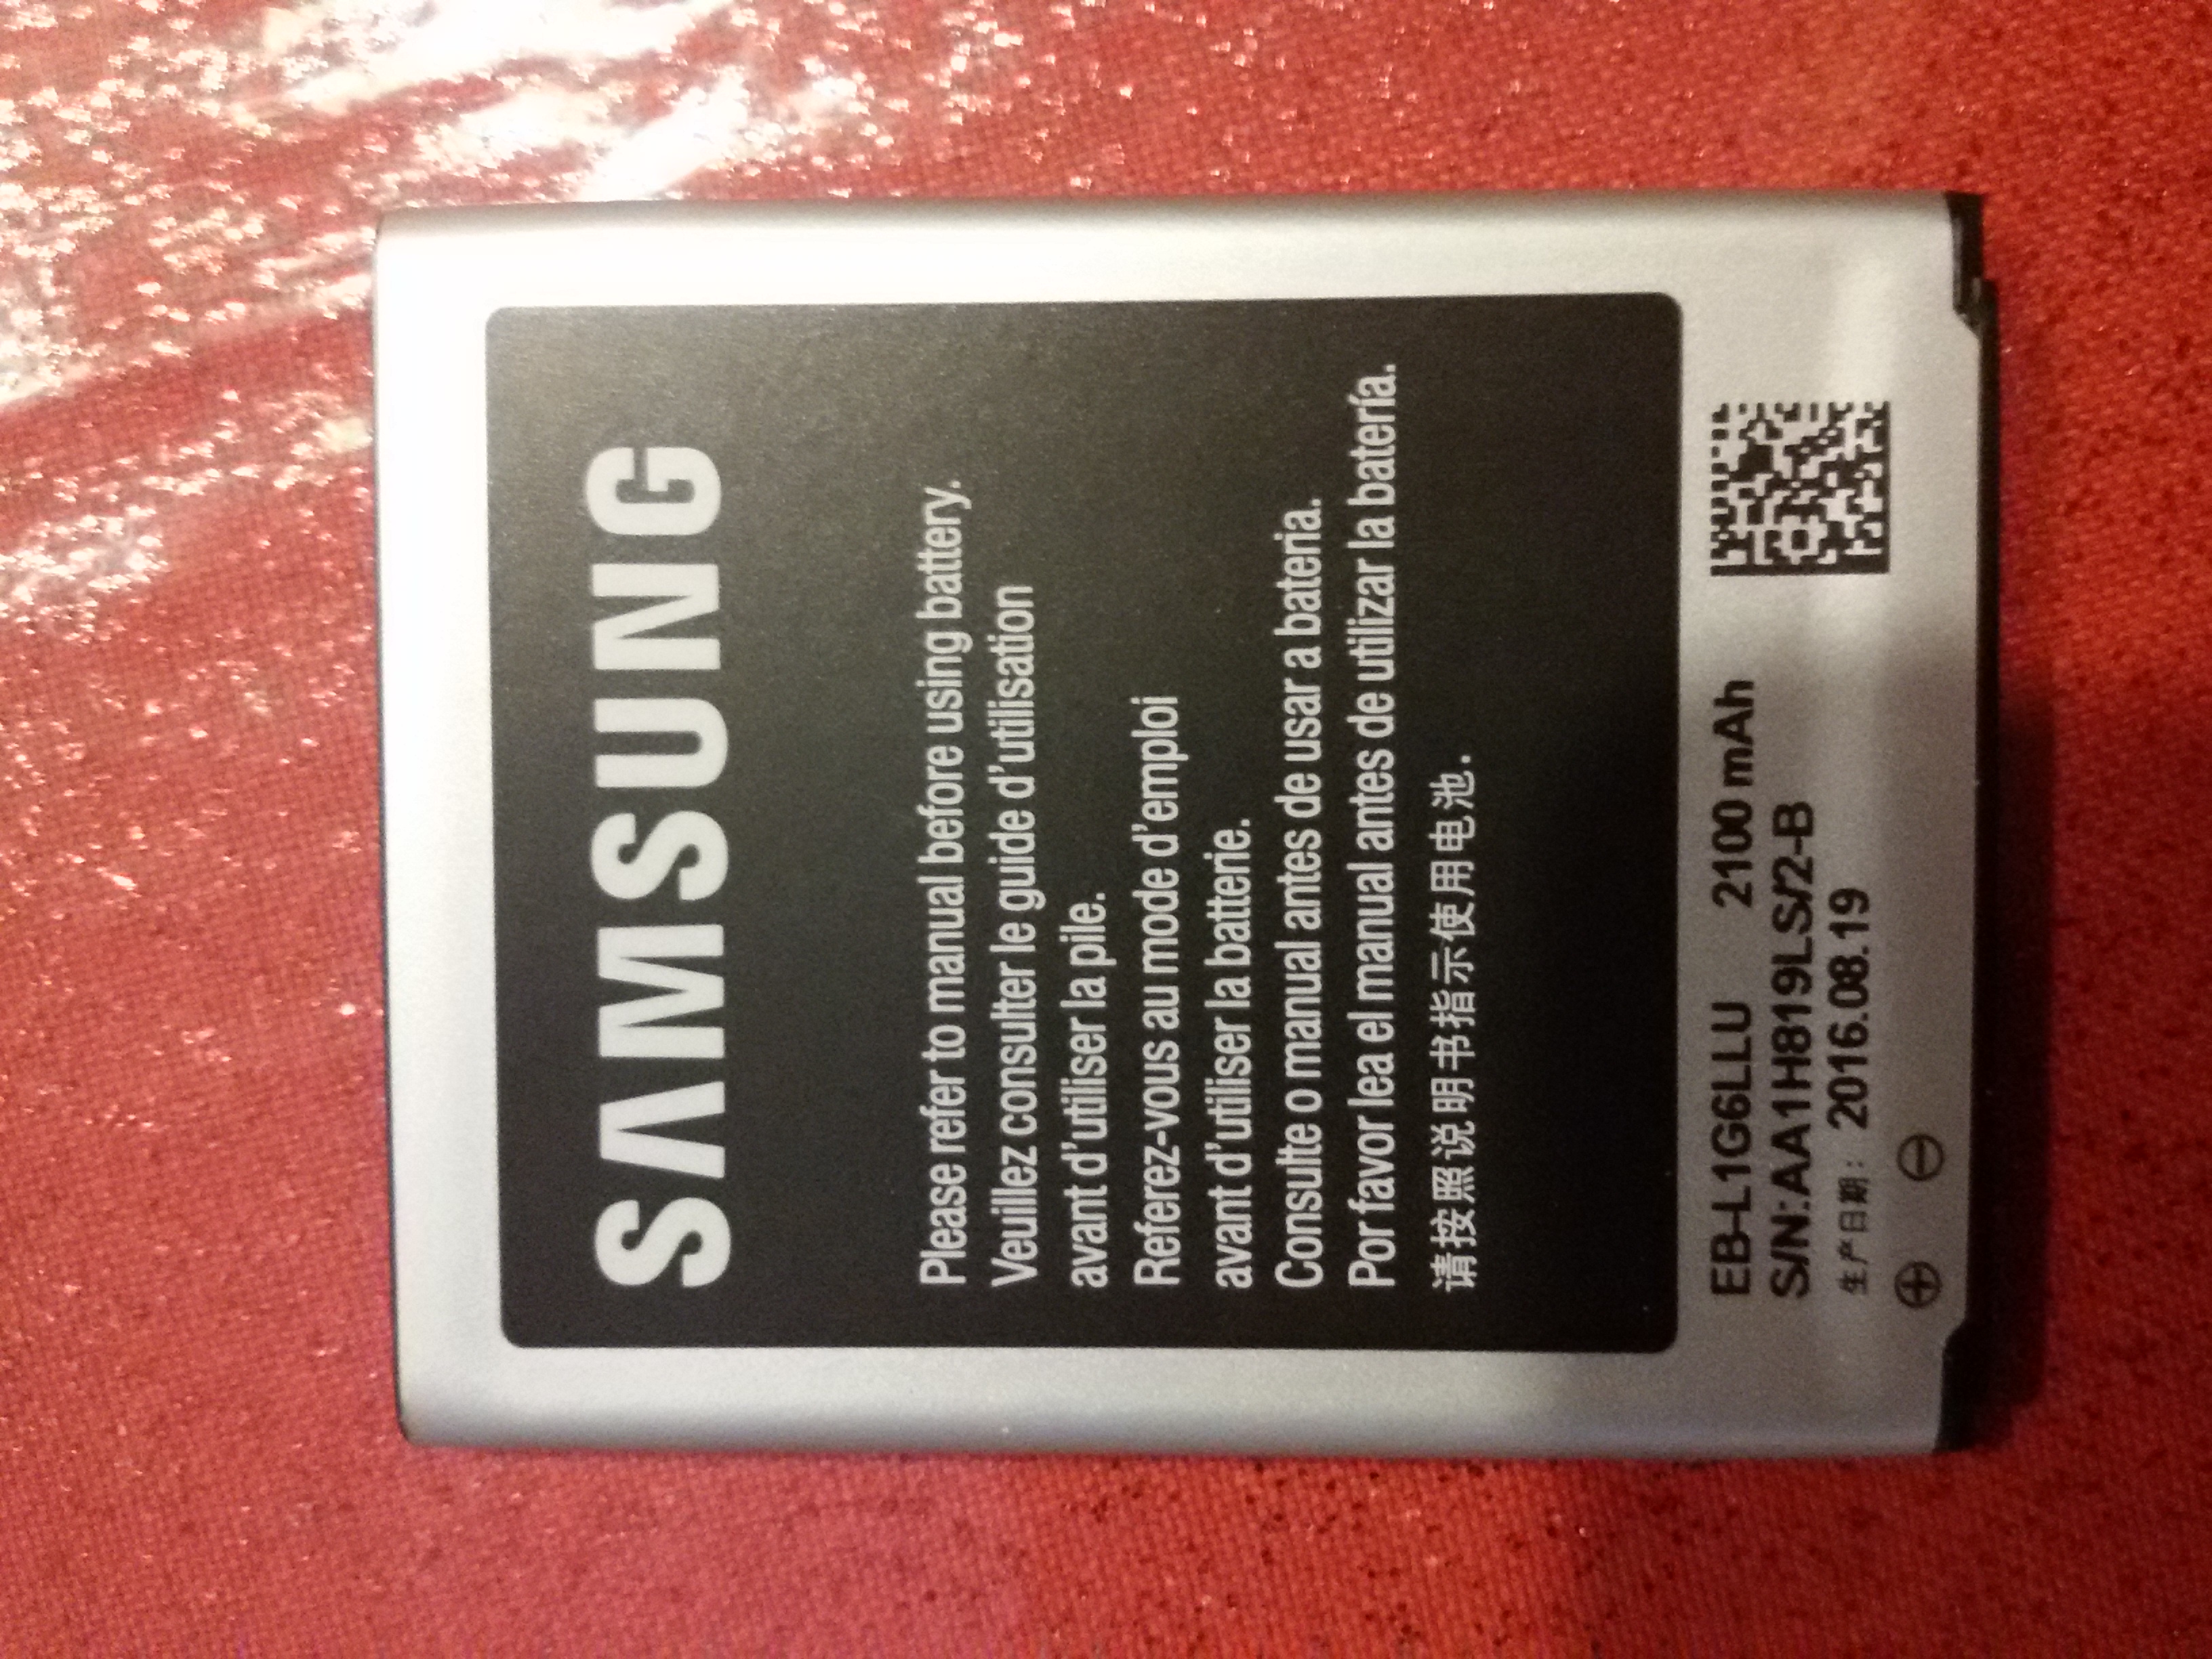 Risolto: Batterie: Come verificare se sono originali? - Pagina 20 - Samsung  Community